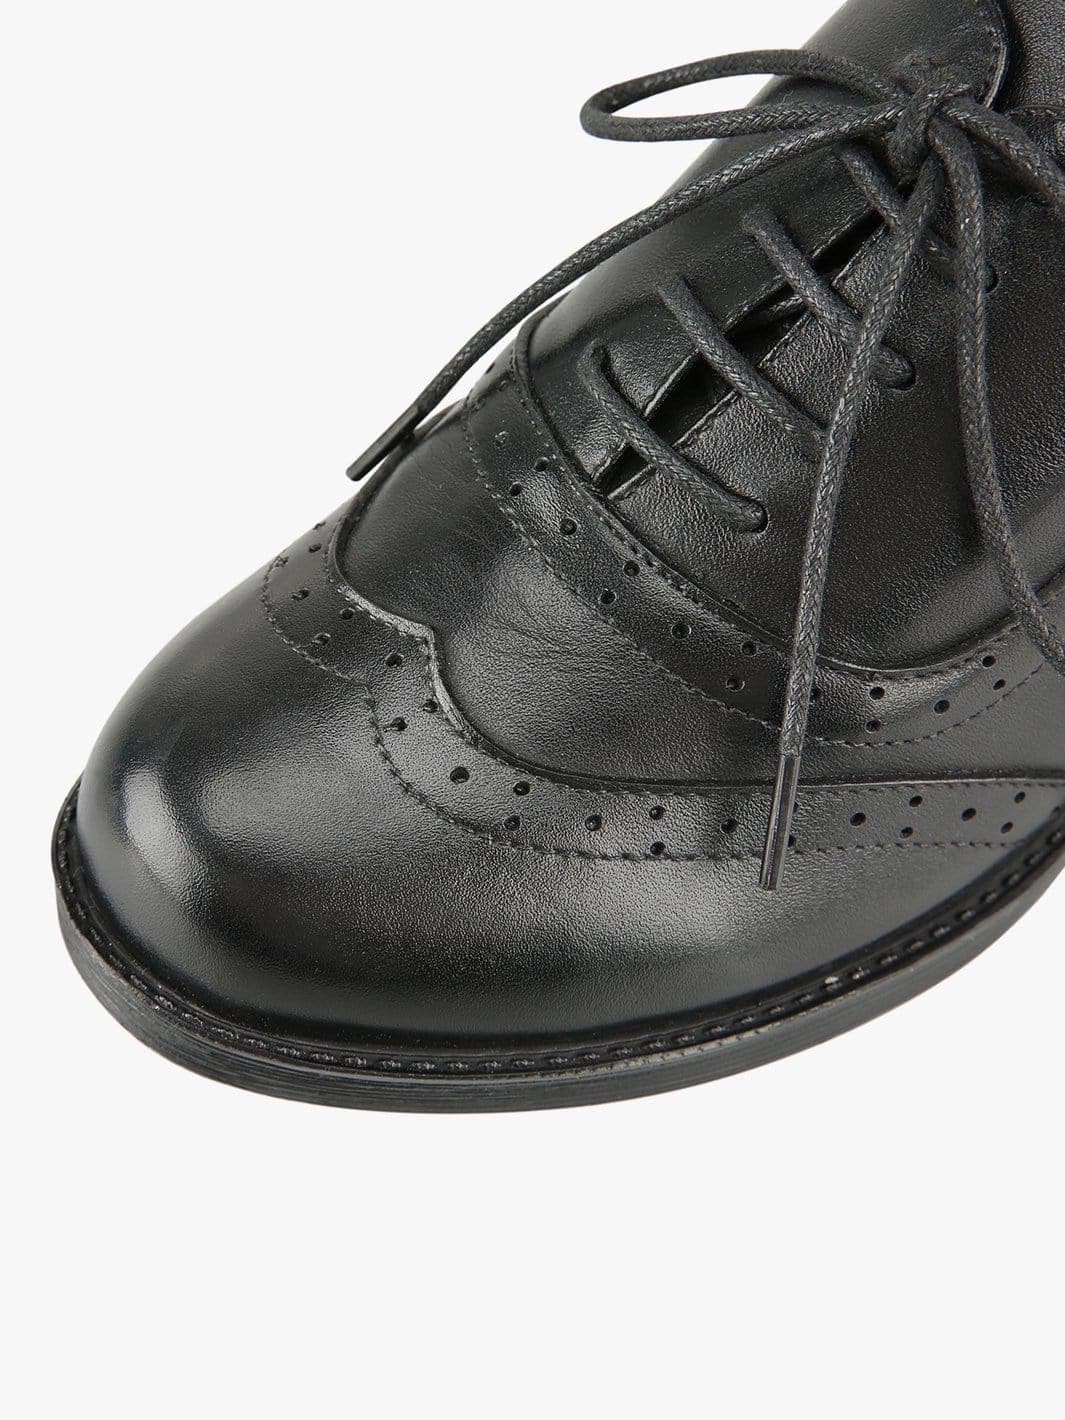 Cara Retro Bow Shoes - Comfy & Stylish Vegan Leather– Ecosusi